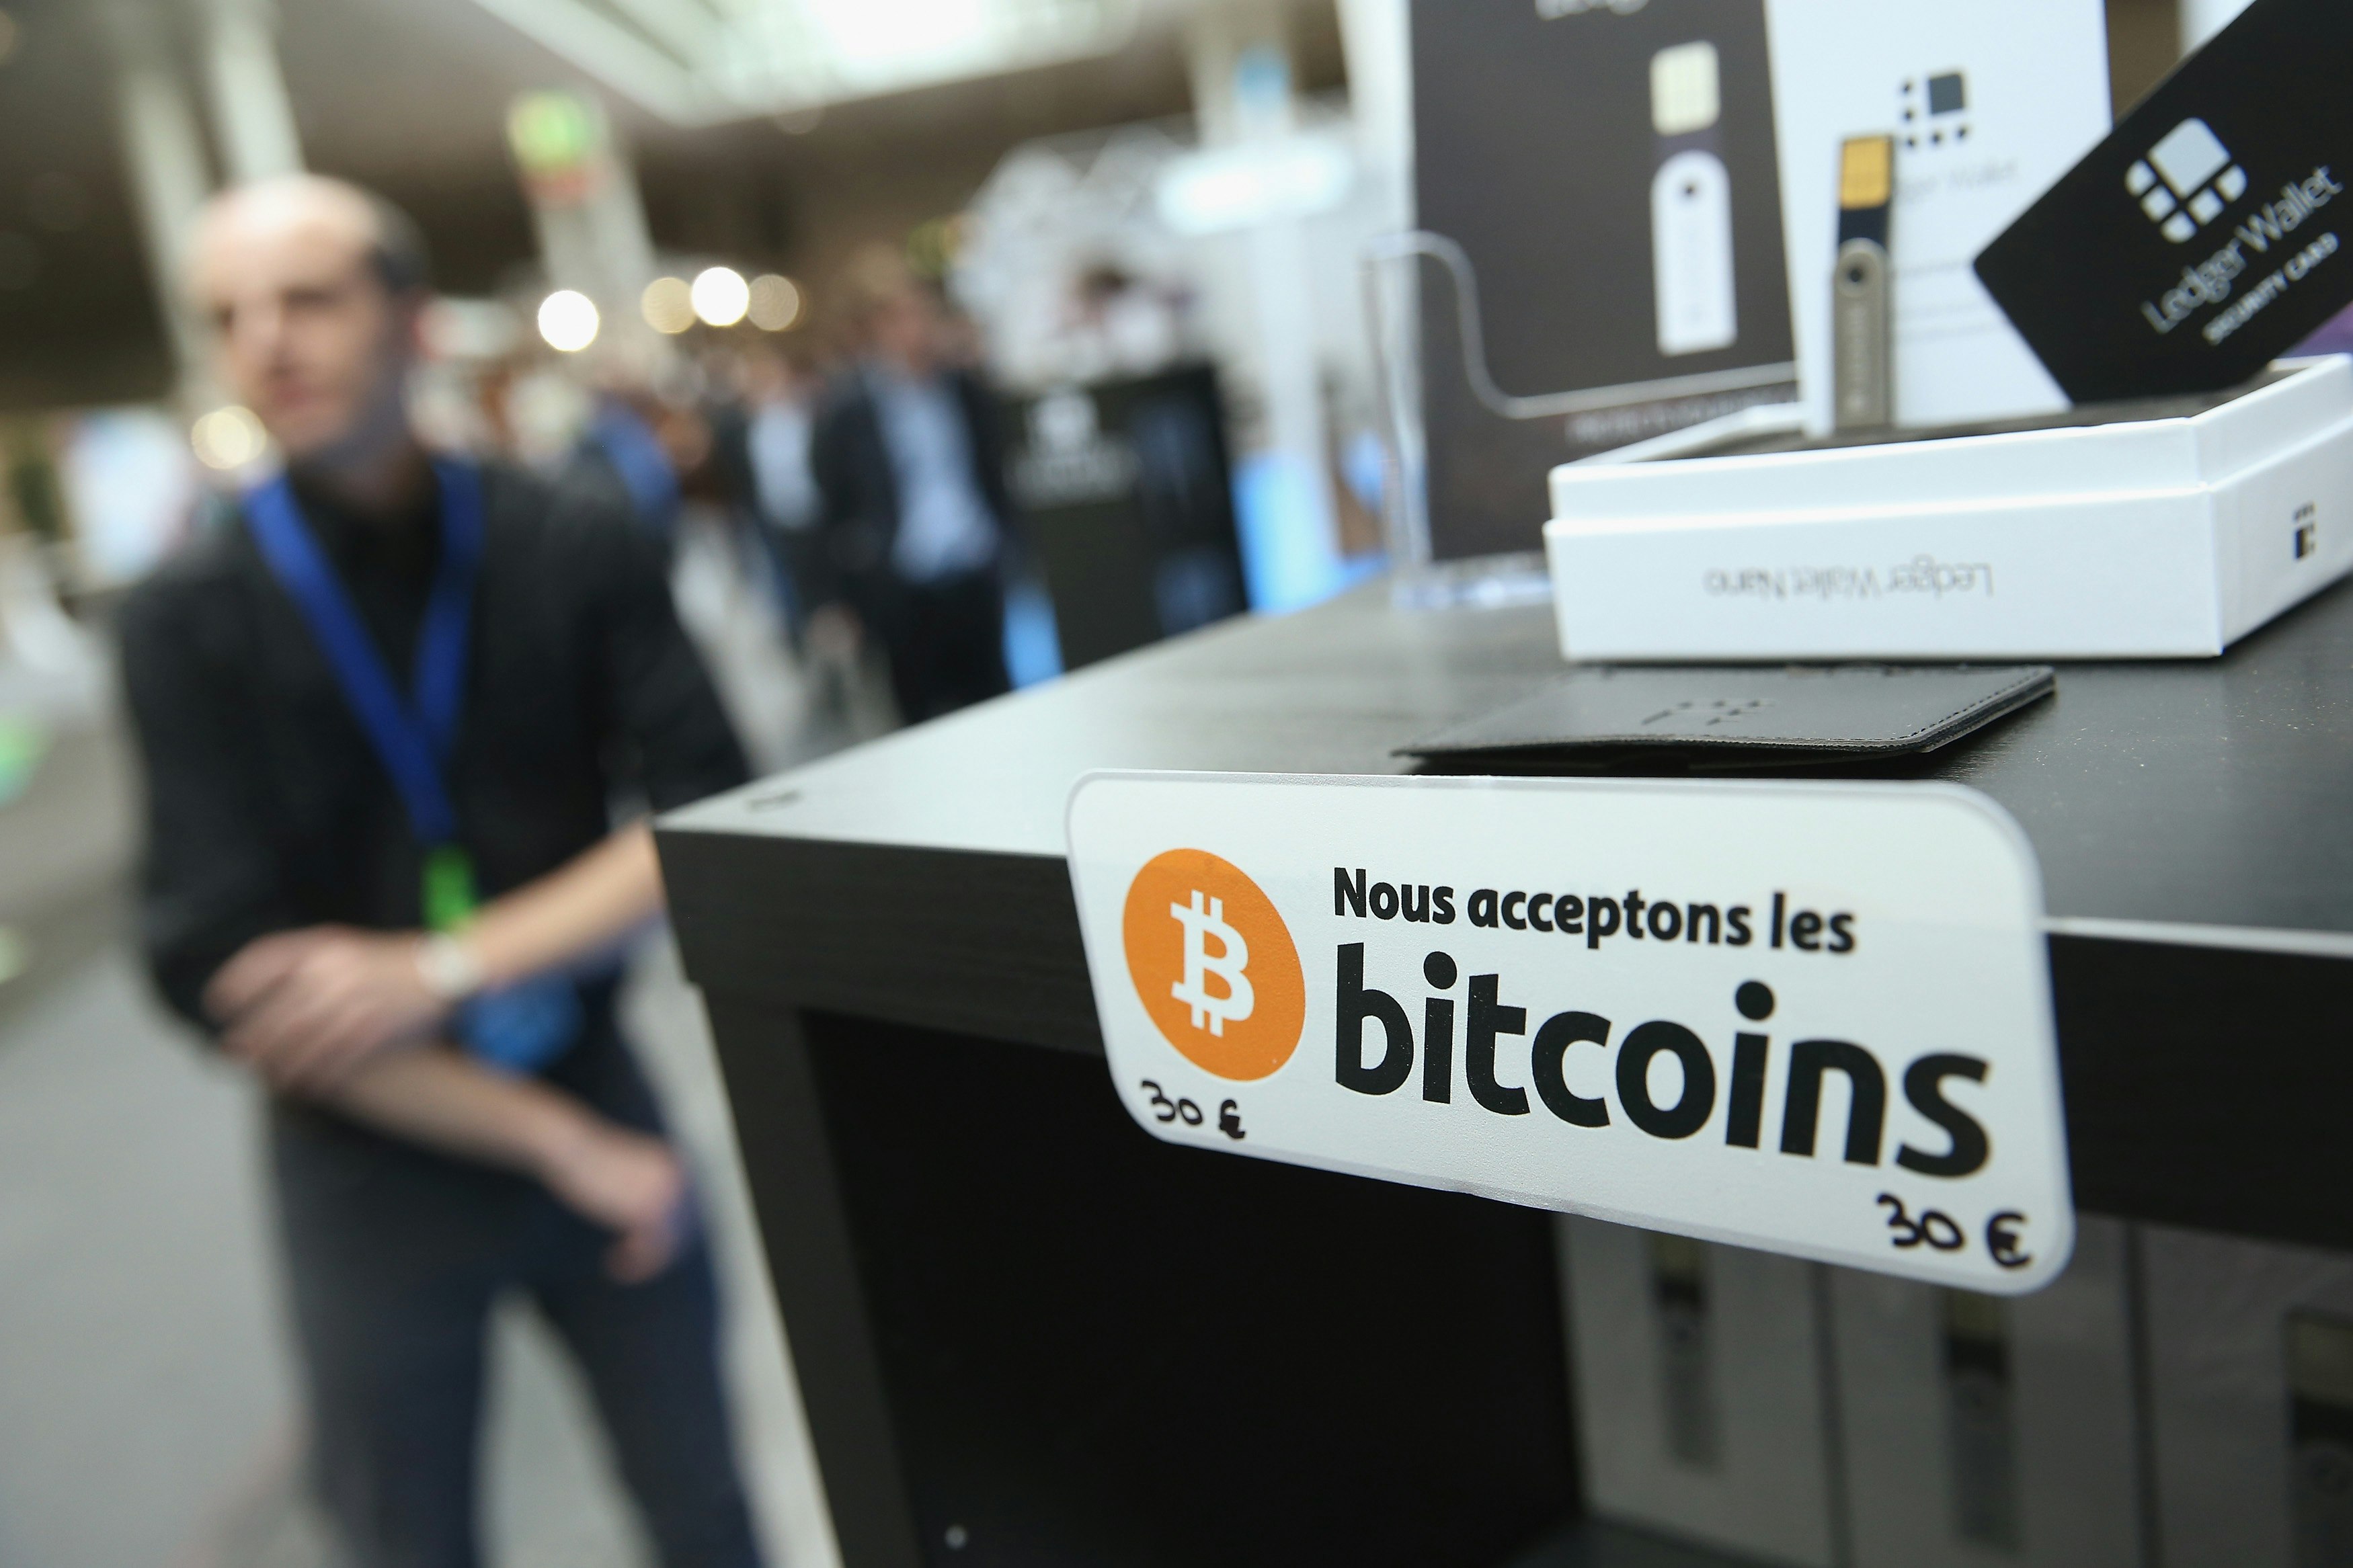 Google & Richard Branson help Bitcoin wallet Blockchain raise $40 million